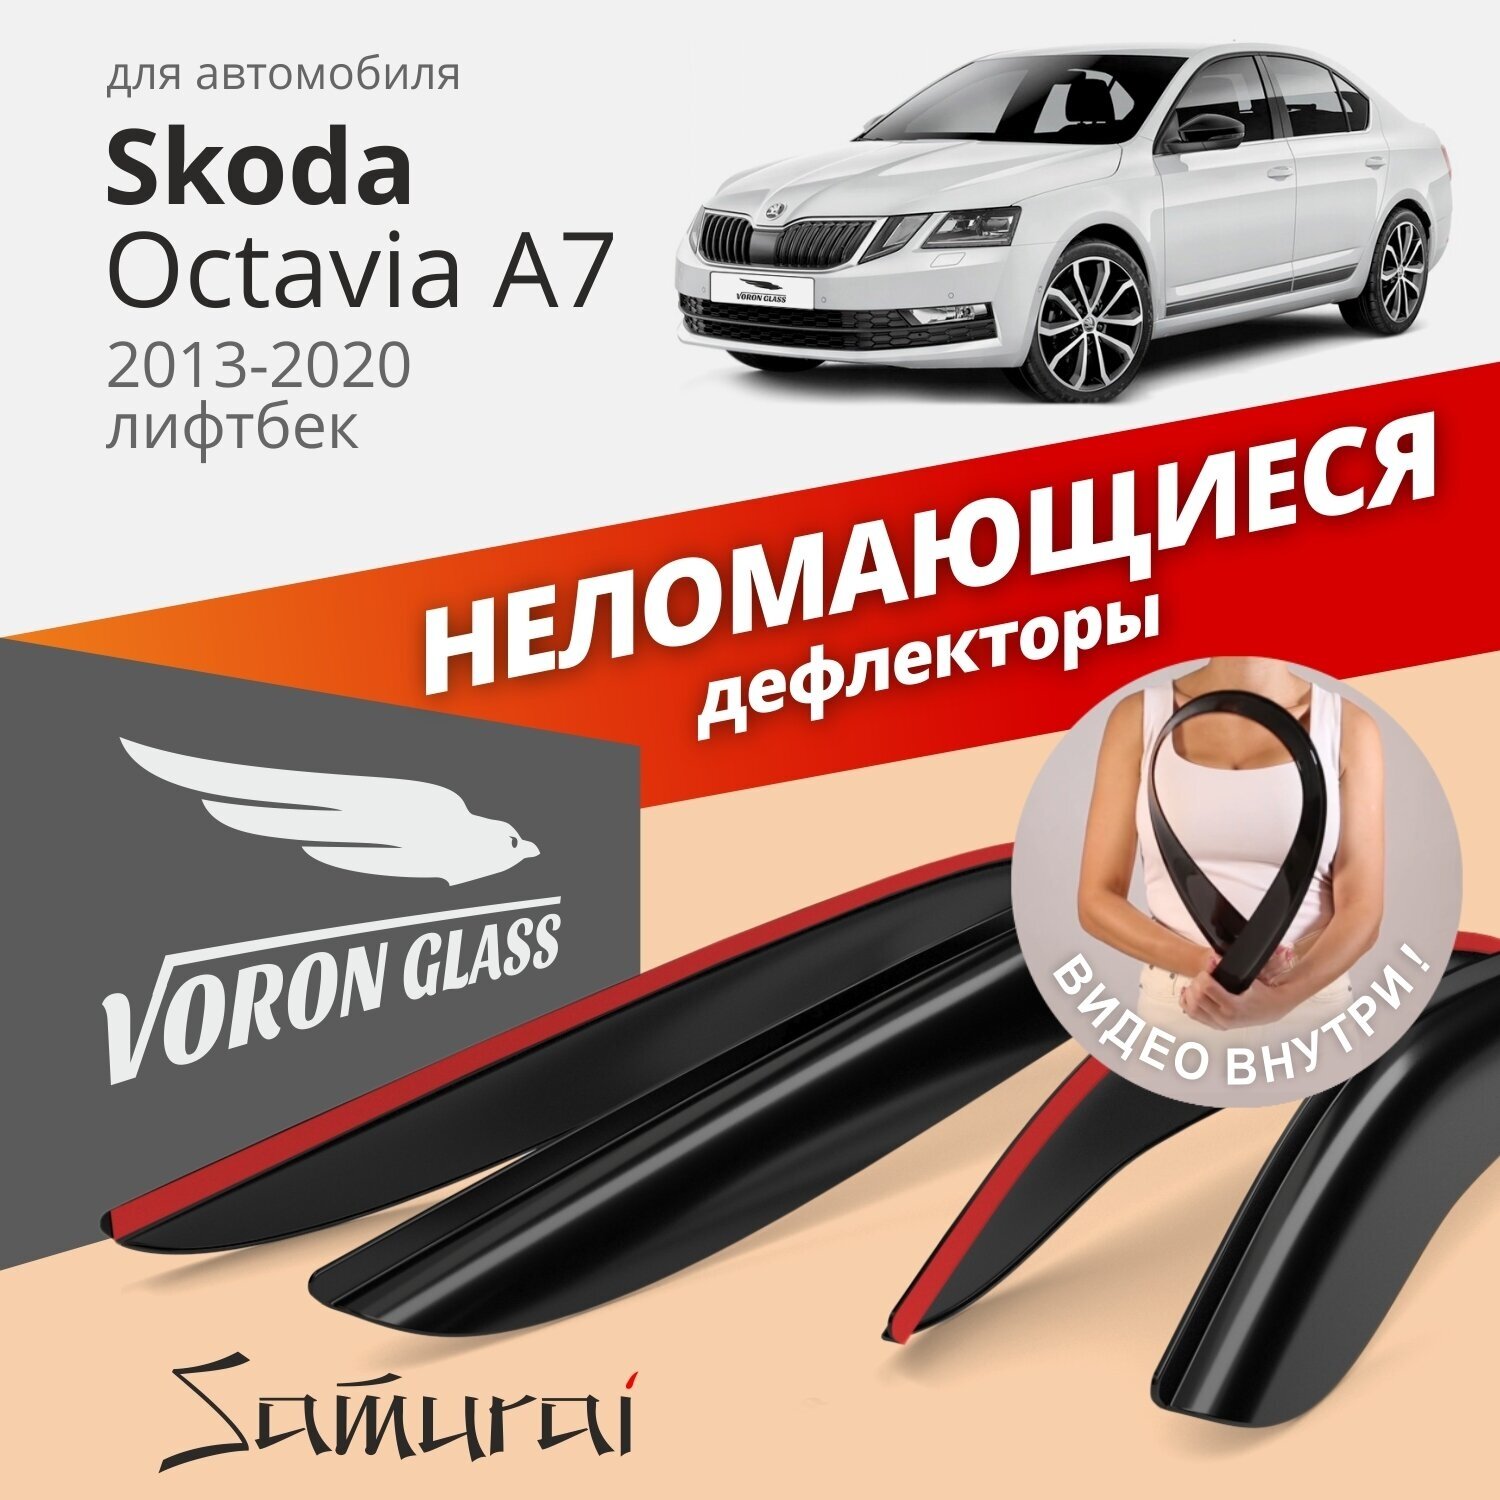 Дефлекторы окон неломающиеся Voron Glass серия Samurai для Skoda Octavia A7 2013-2020 лифтбек накладные 4 шт.